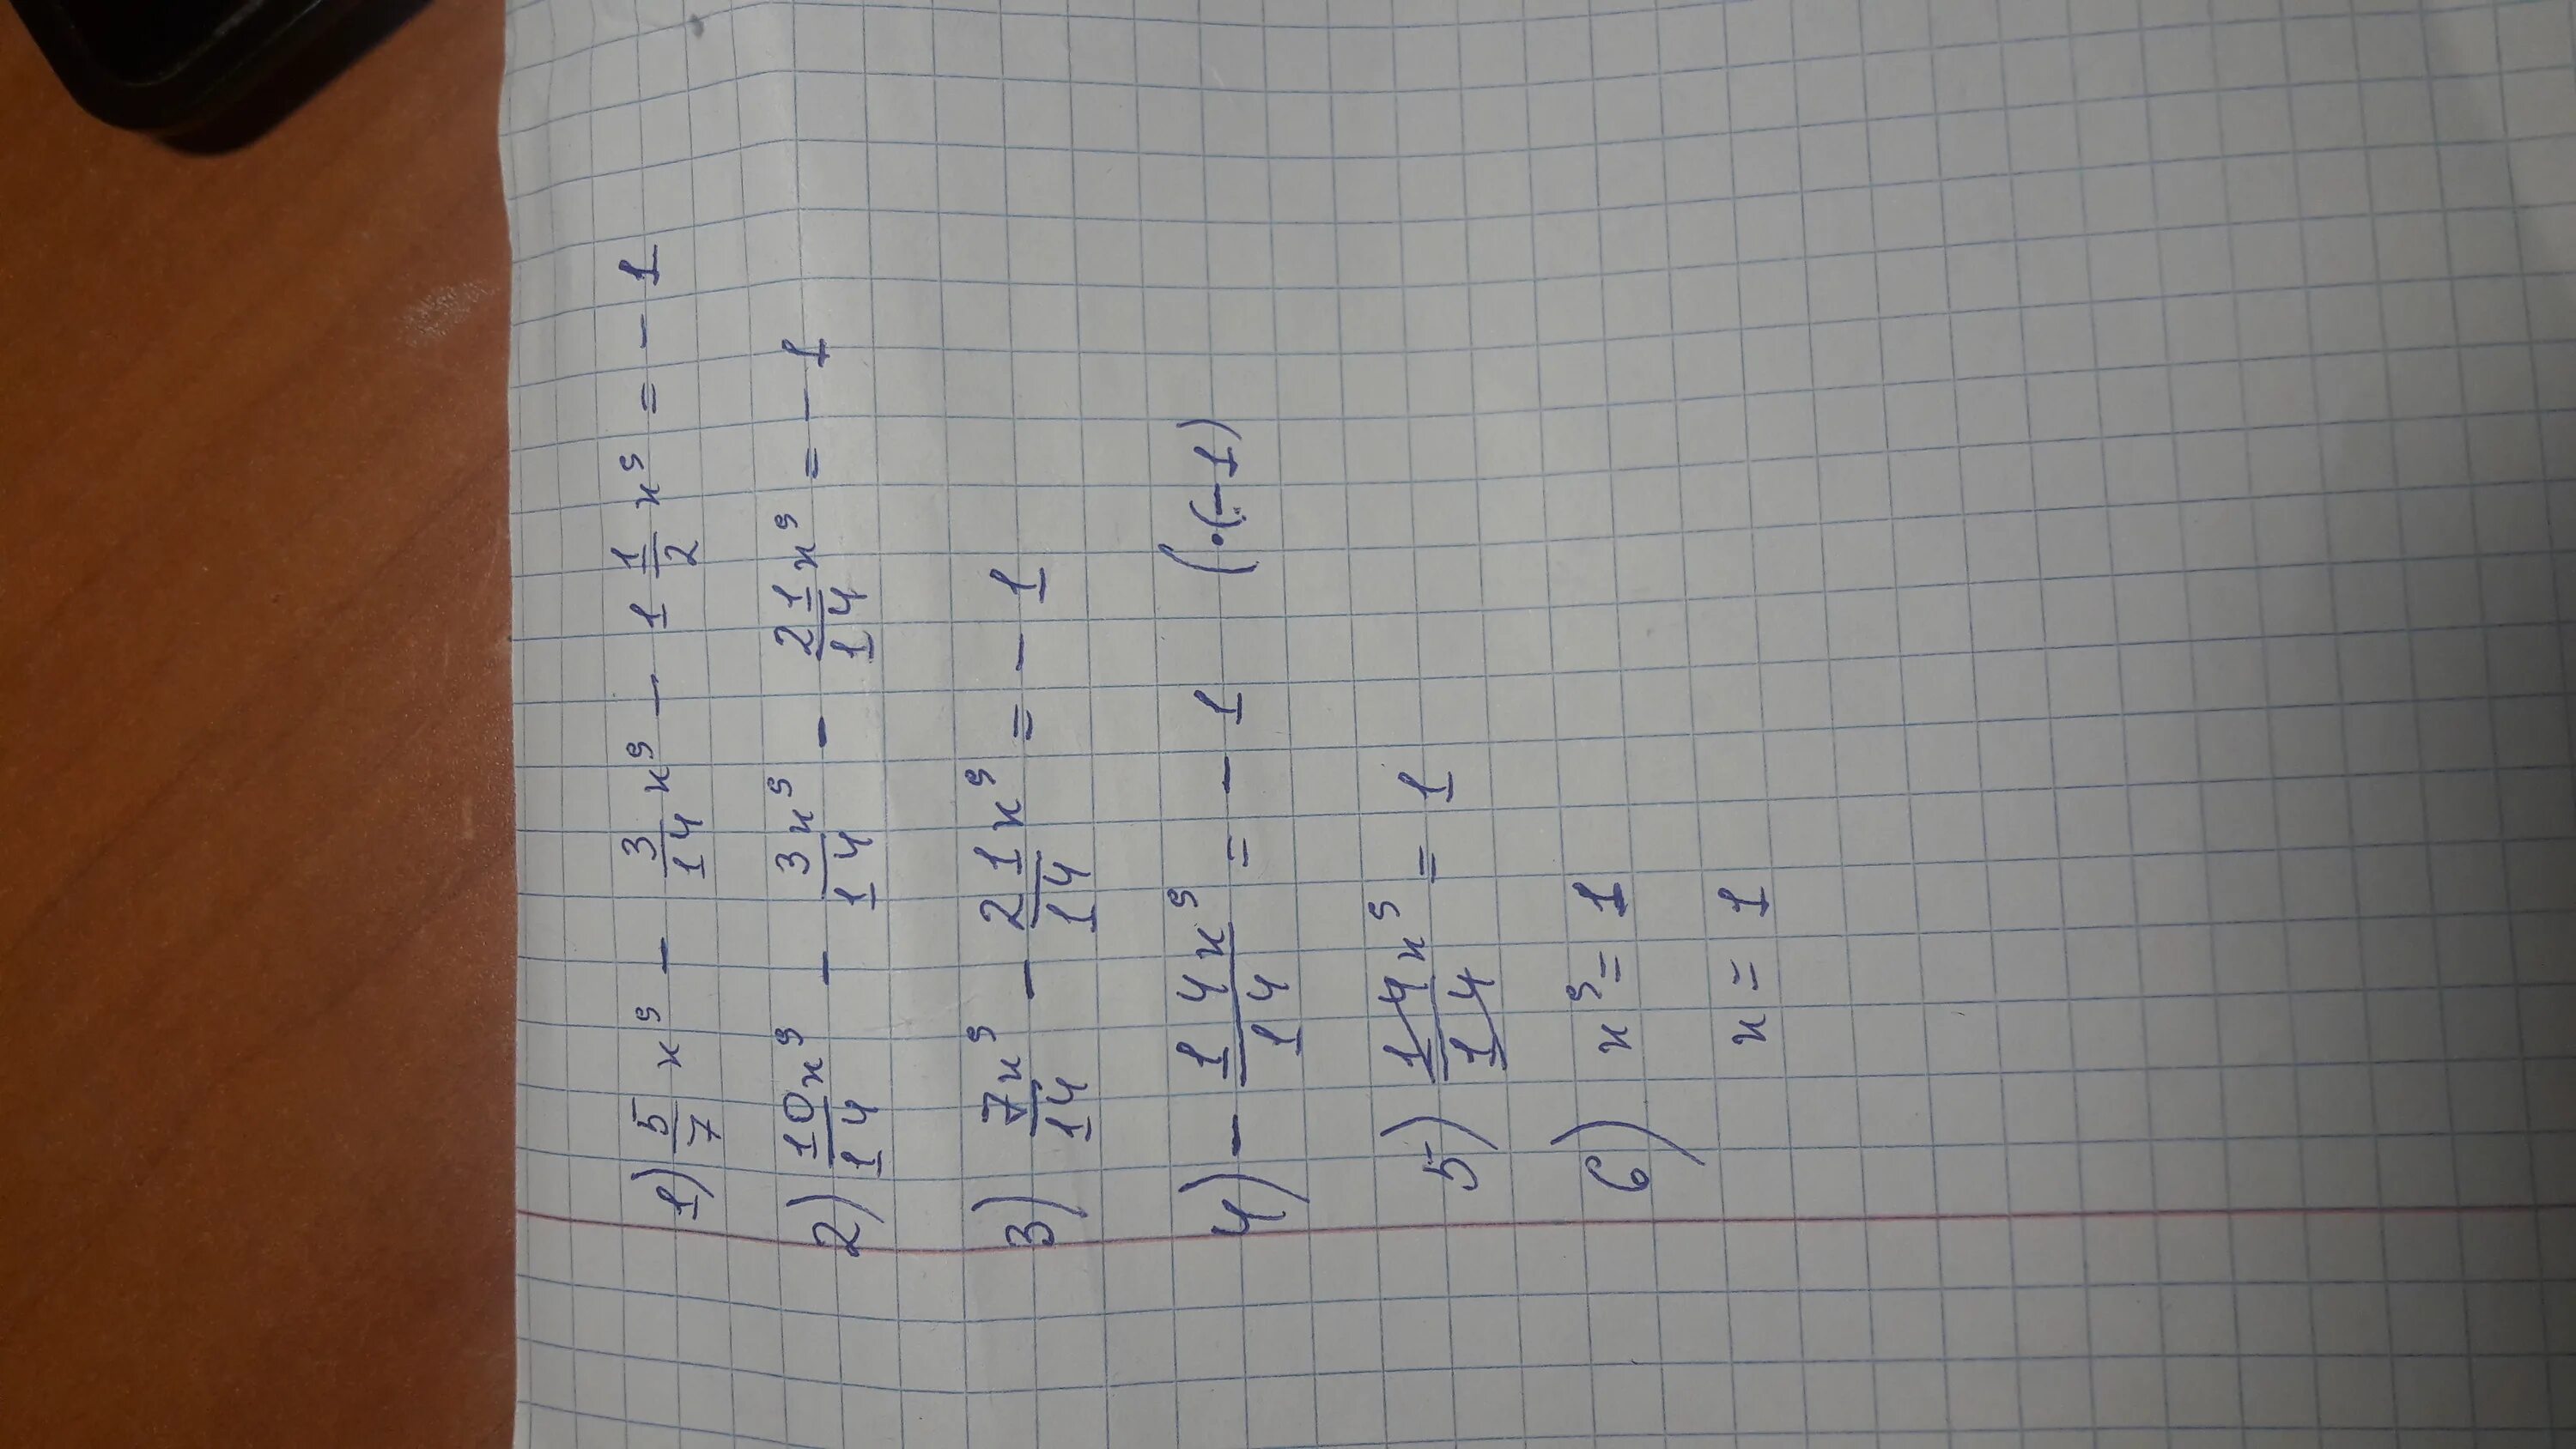 8 2\3+1 5\6-2 Умножить на 3 1\2. 4 1 6 Умножить на 3 3/5. **5 Умножить на 4* равно 1****. Вычислите 6 5 3 4 умножить на 2 3. Вычислите 2 1 16 умножить на 4